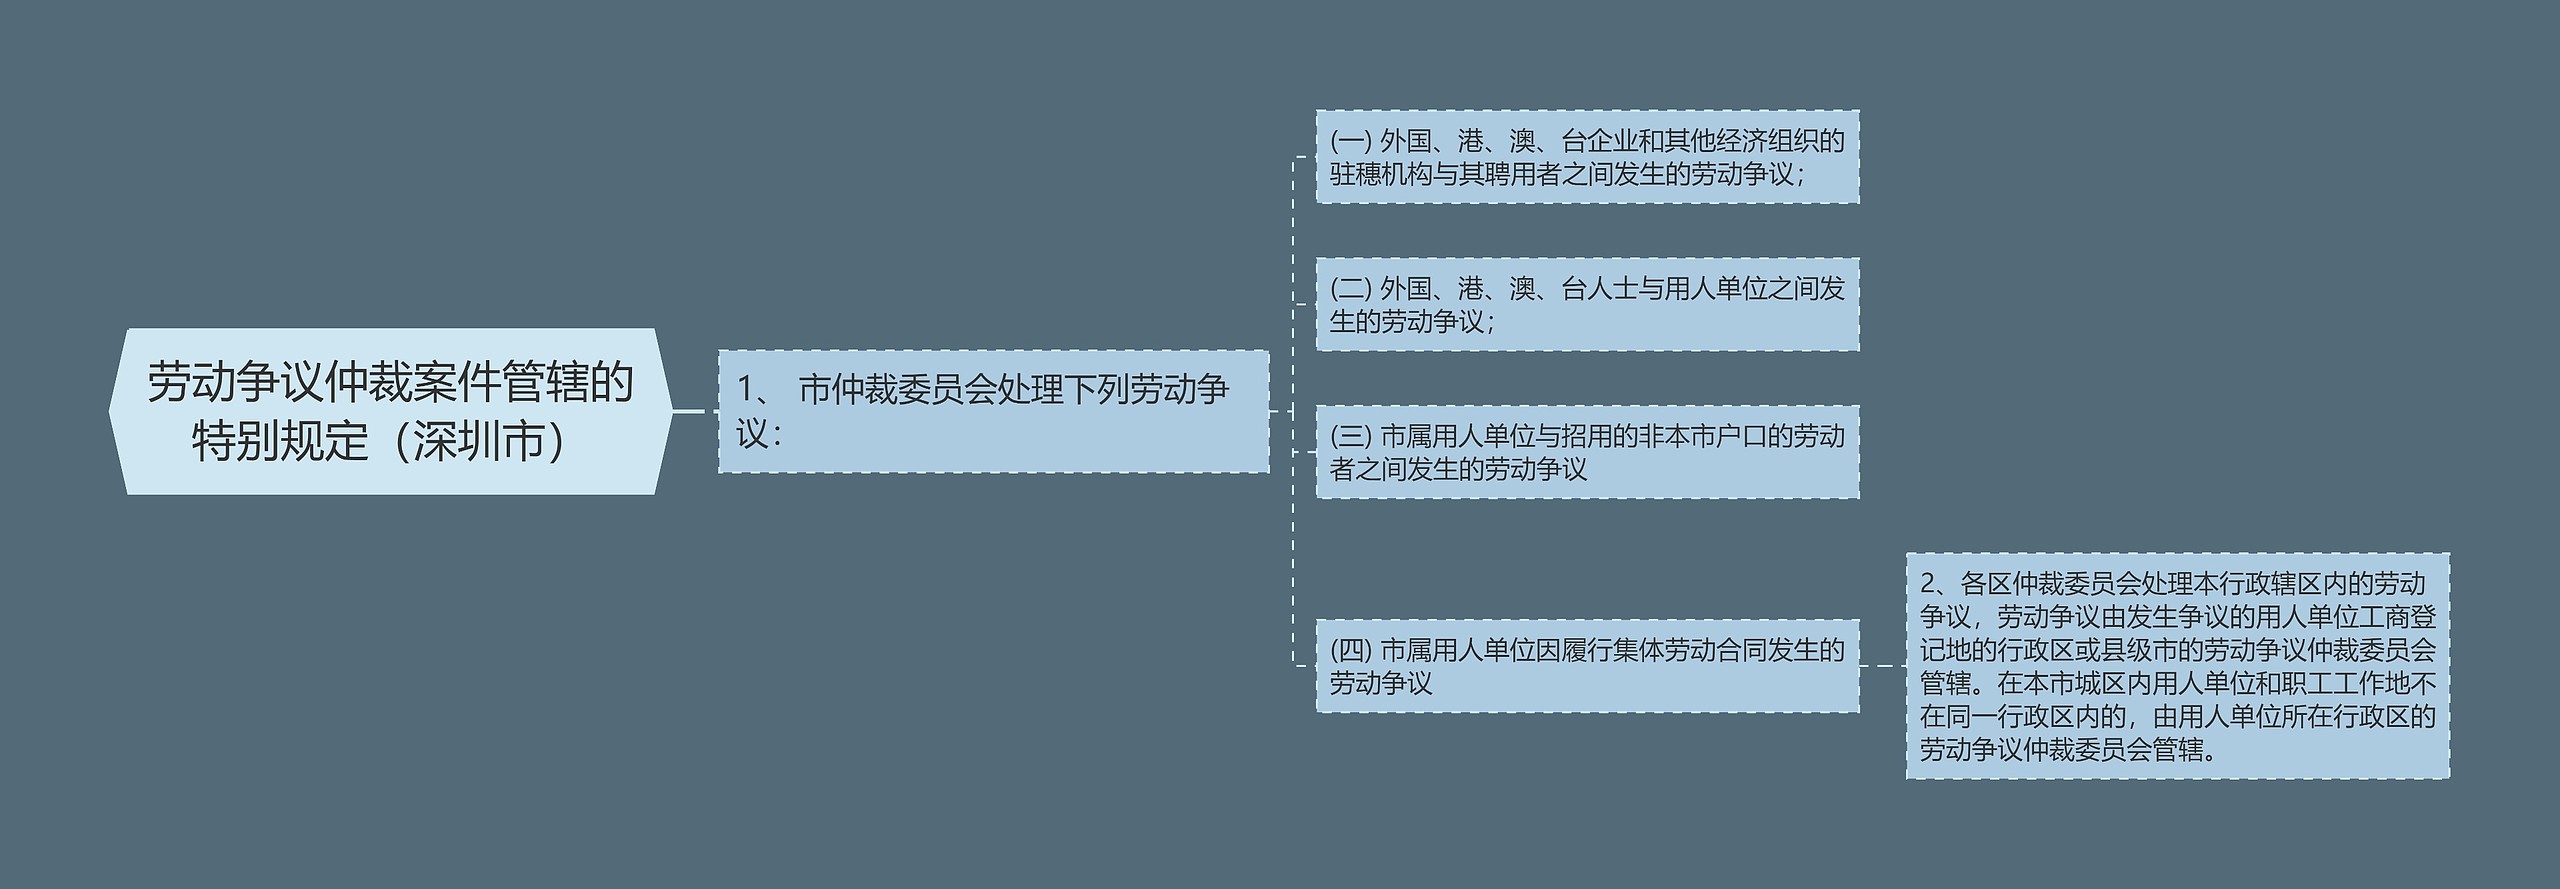 劳动争议仲裁案件管辖的特别规定（深圳市）